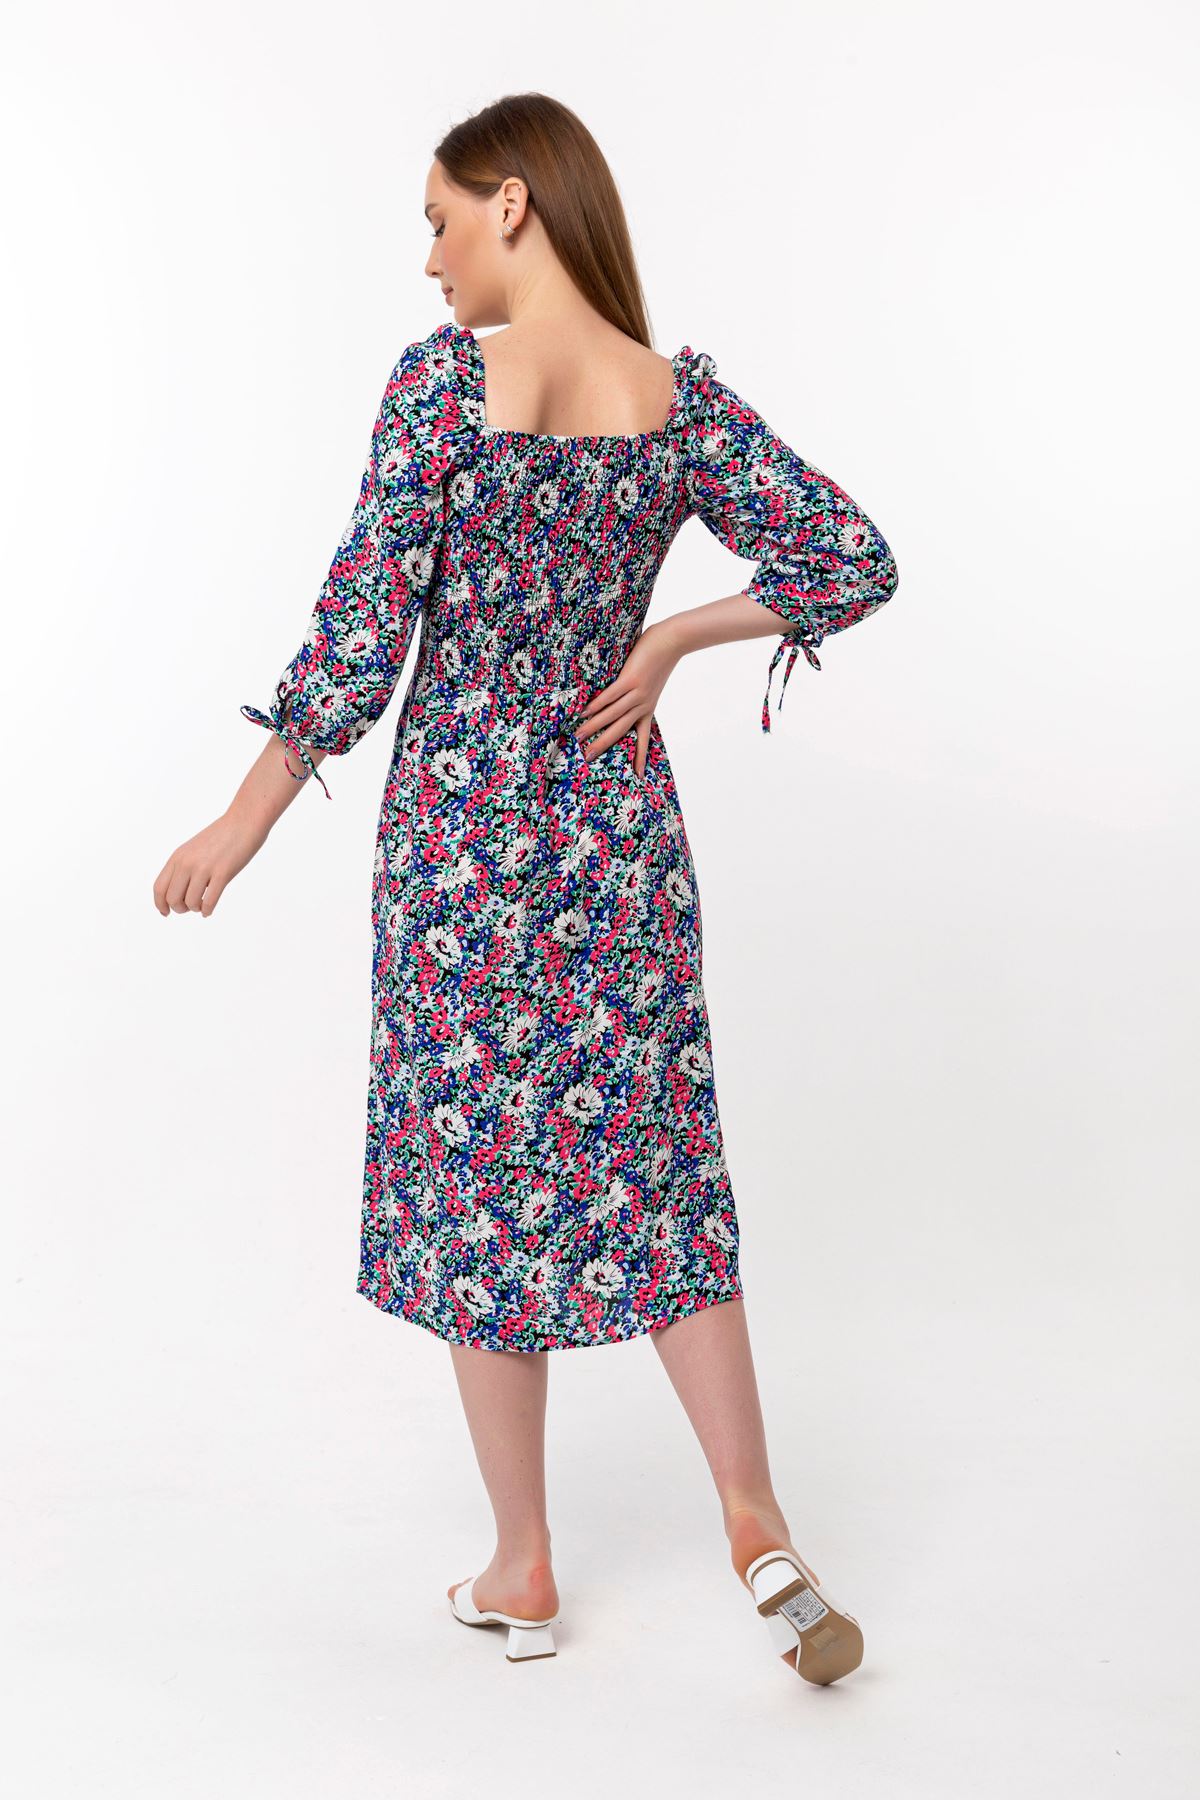 فستان نسائي قماش فيسكون 3/4 الحجم طوق مربع ميدي ضيق زهرة مقرمشة - ازرق